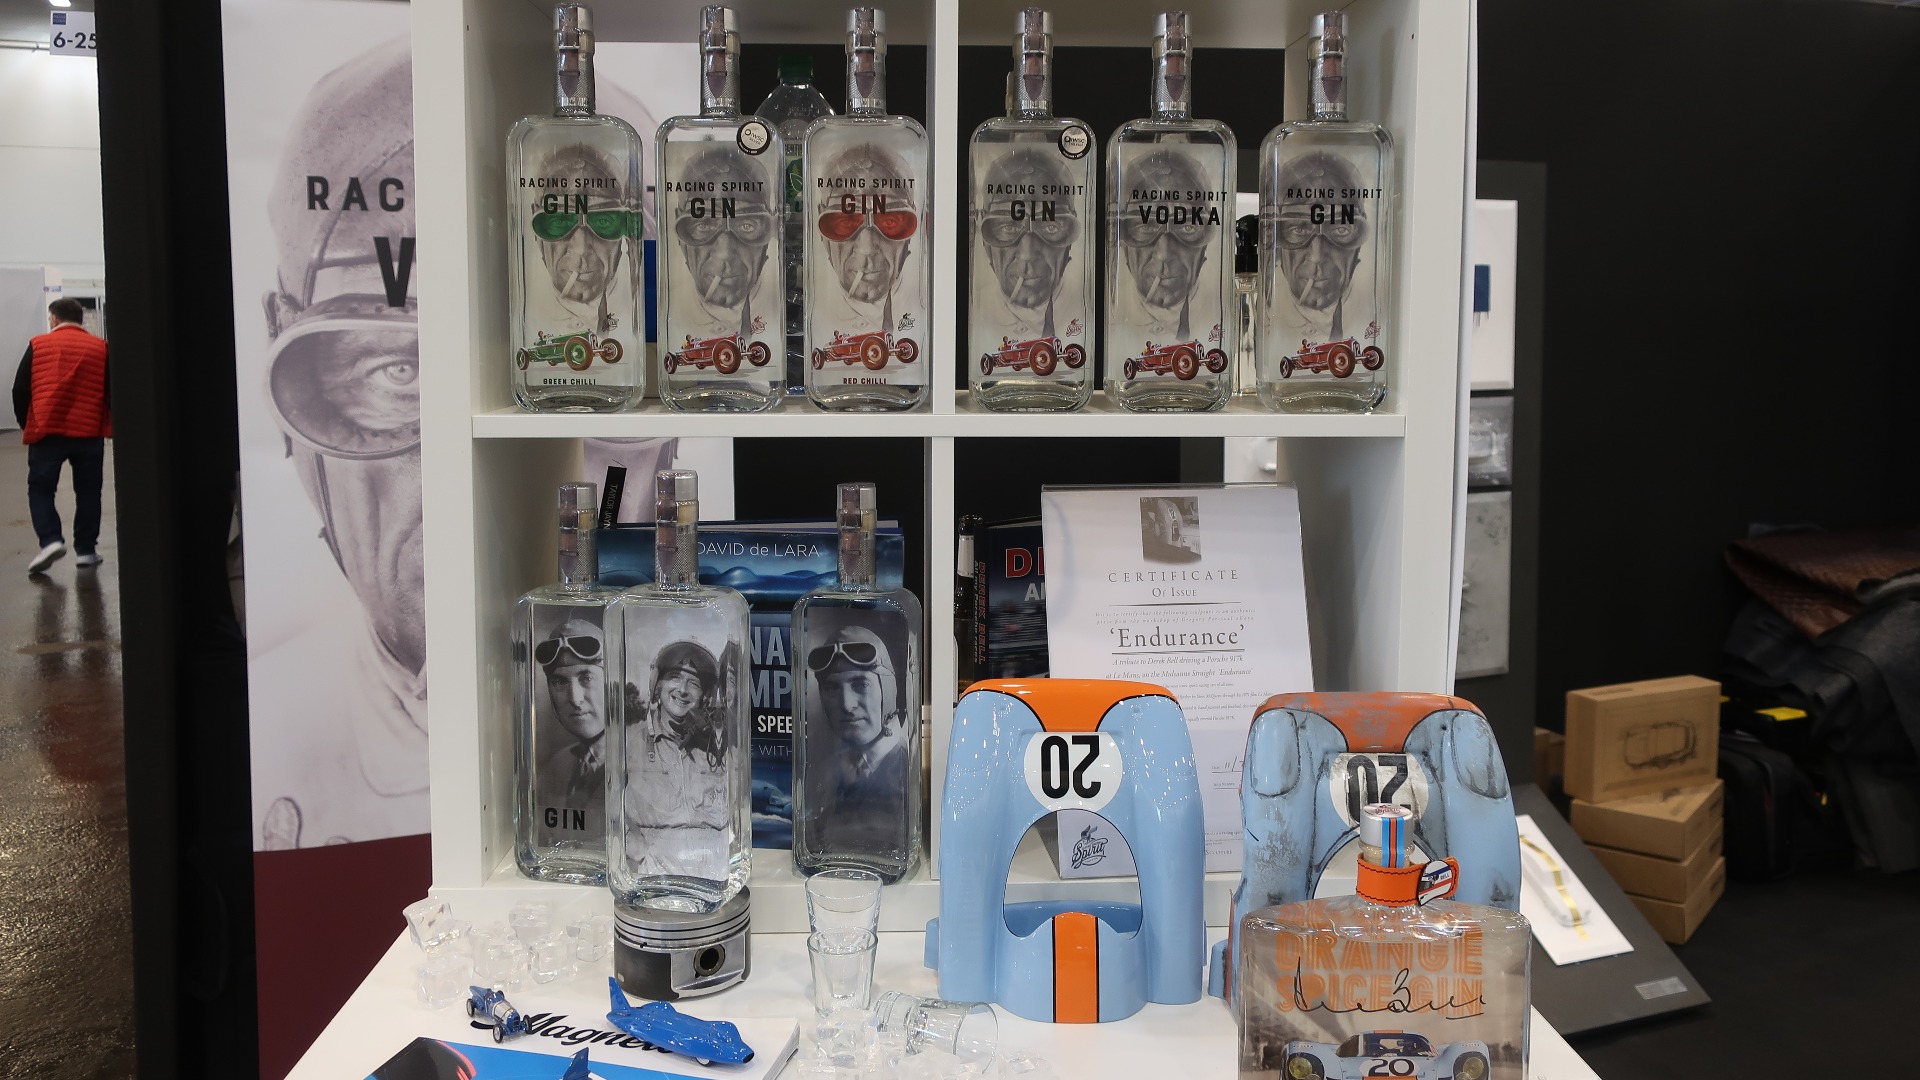 Et nytt britisk firma lager Gin og Vodka med flotte flasker med motiv av Nuvolari og Campbell.